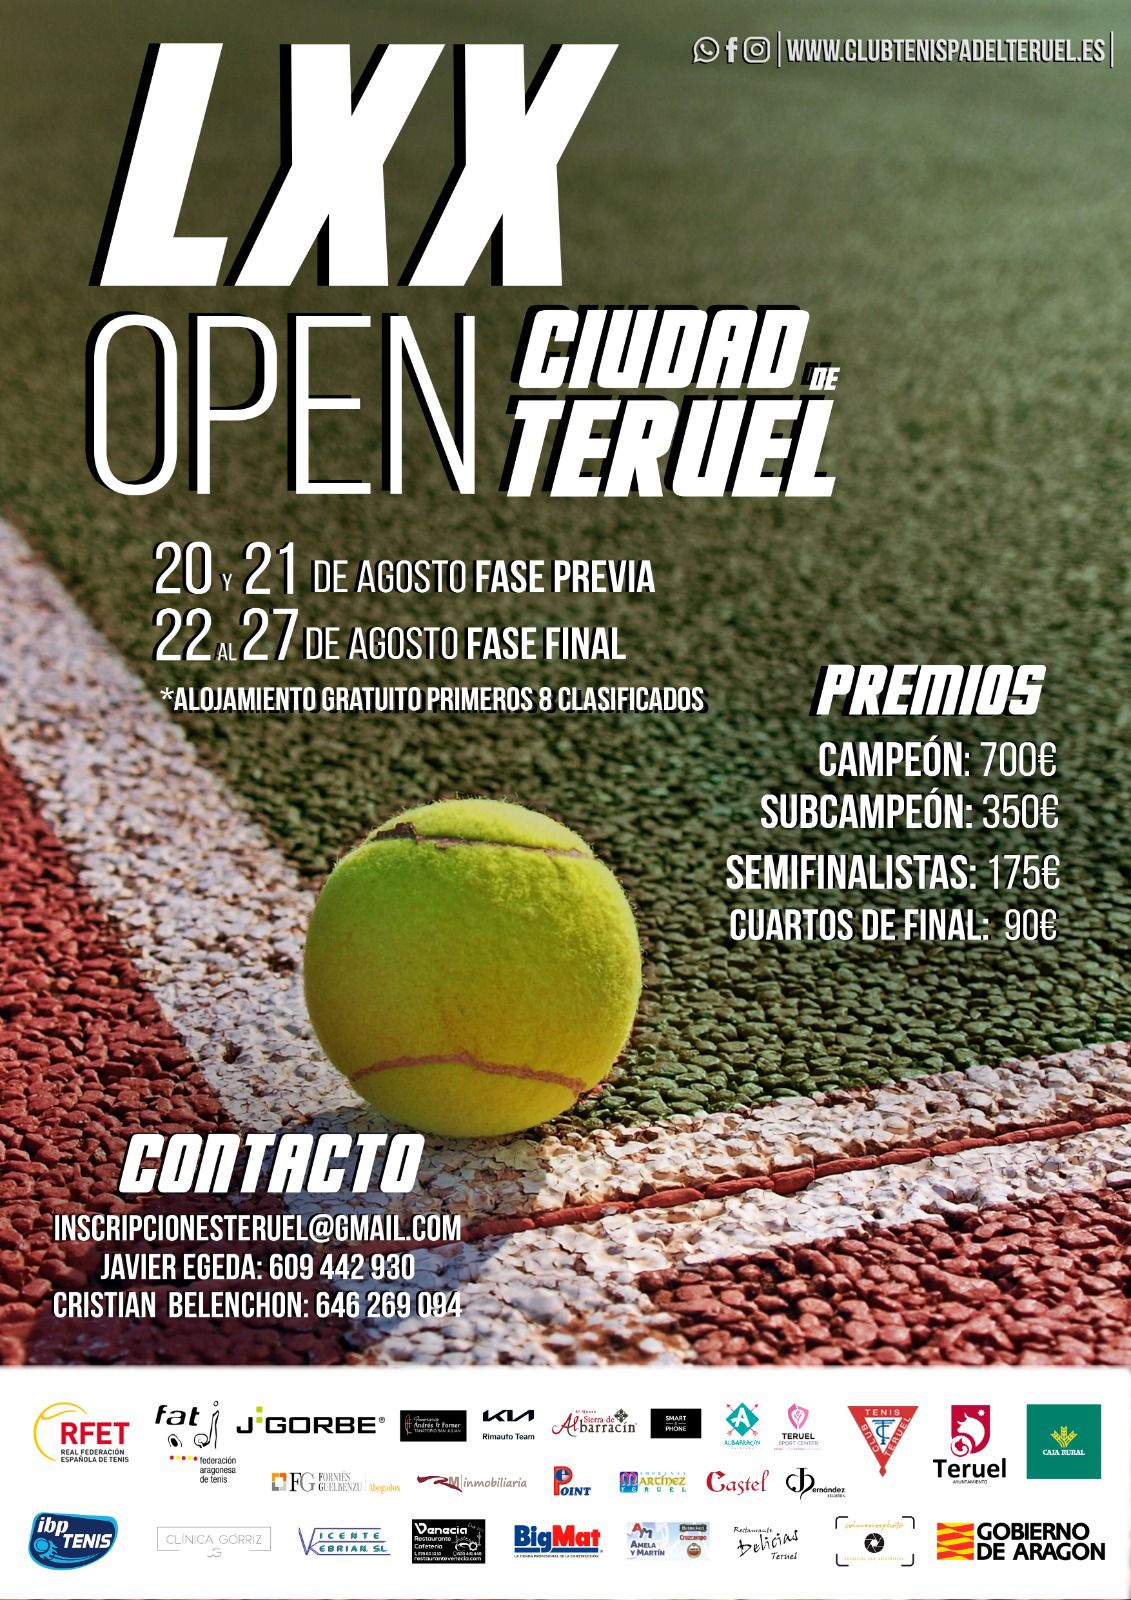 Open Teruel